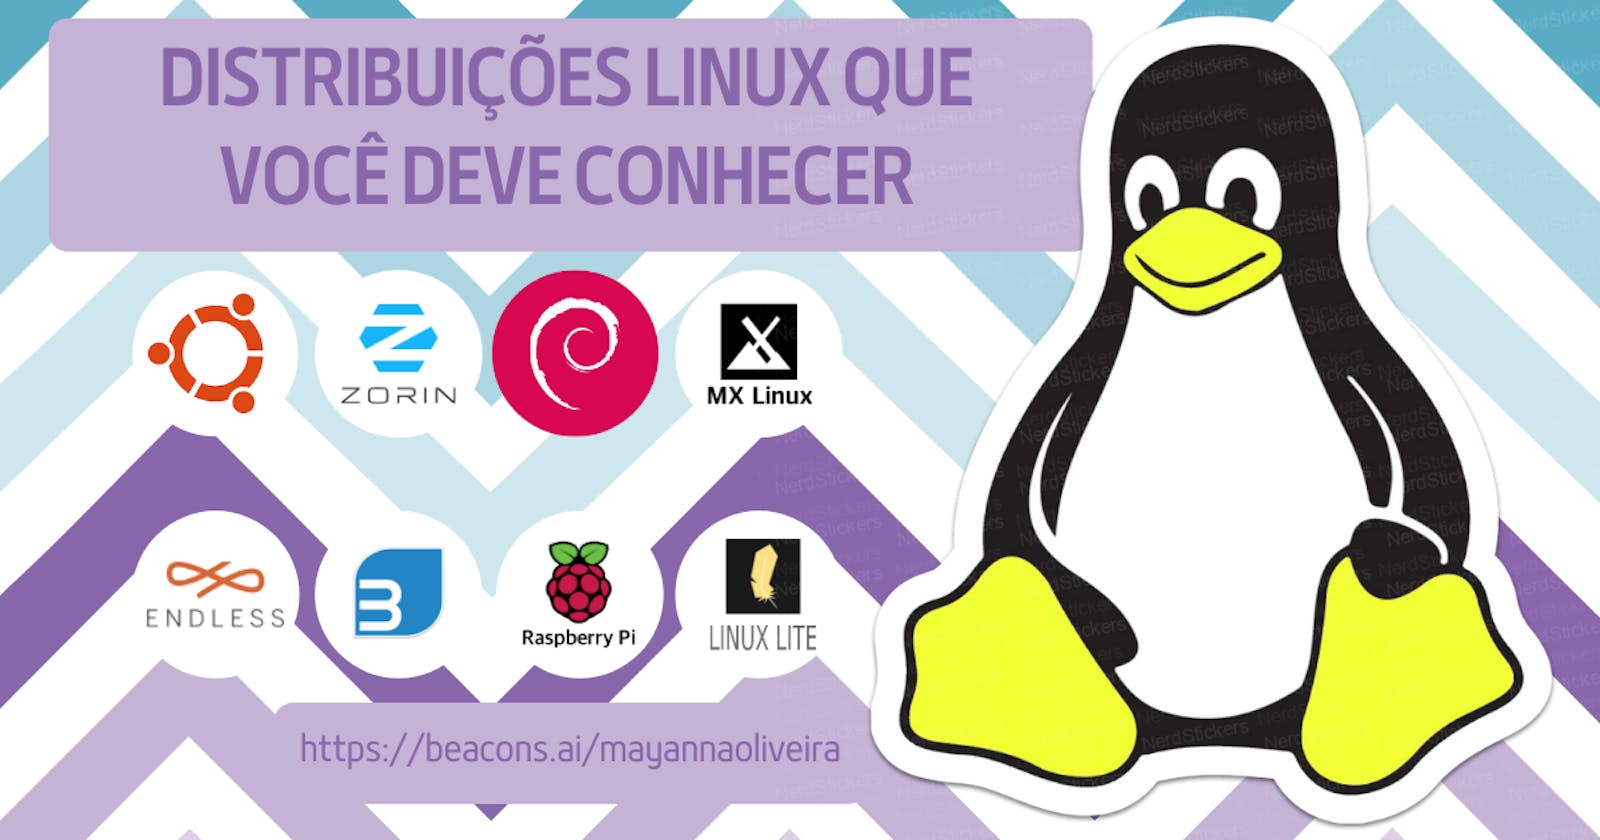 Distribuições Linux que você deve conhecer